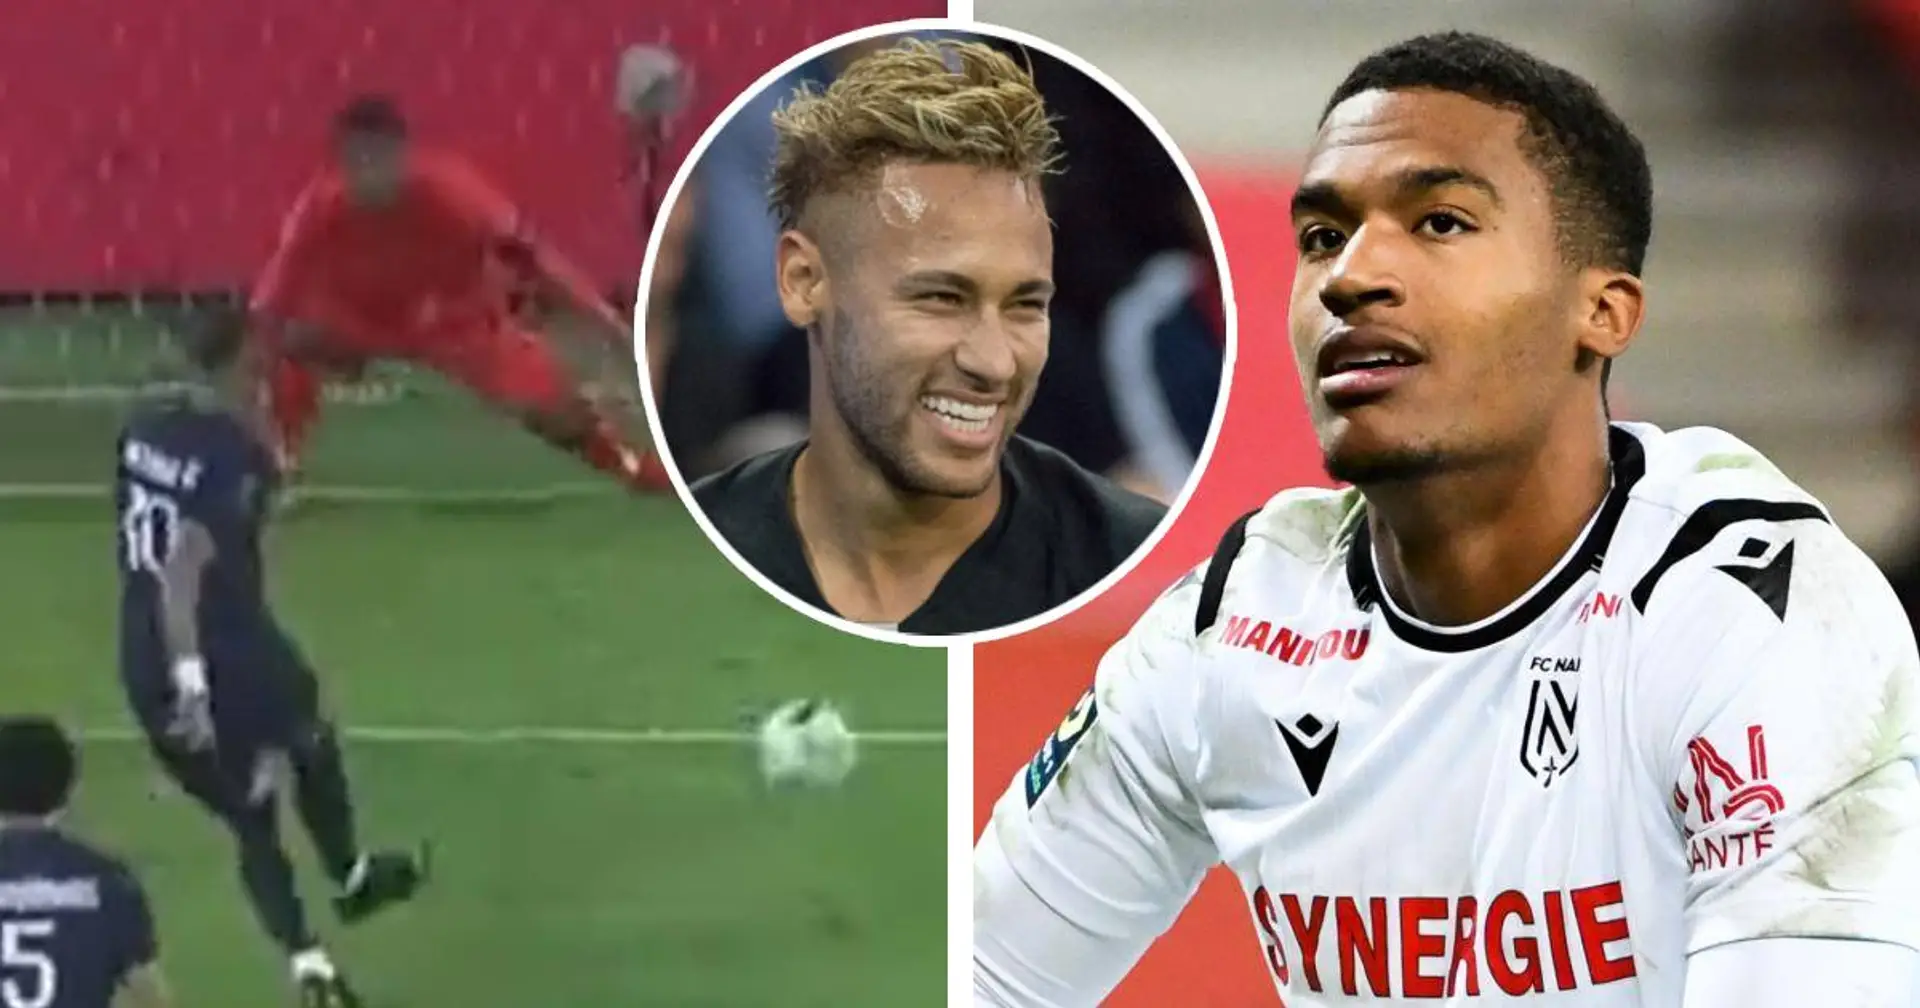 "Il aurait pu se fracturer la hanche": les fans ciblent Lafont alors que Neymar l'a trollé via penalty